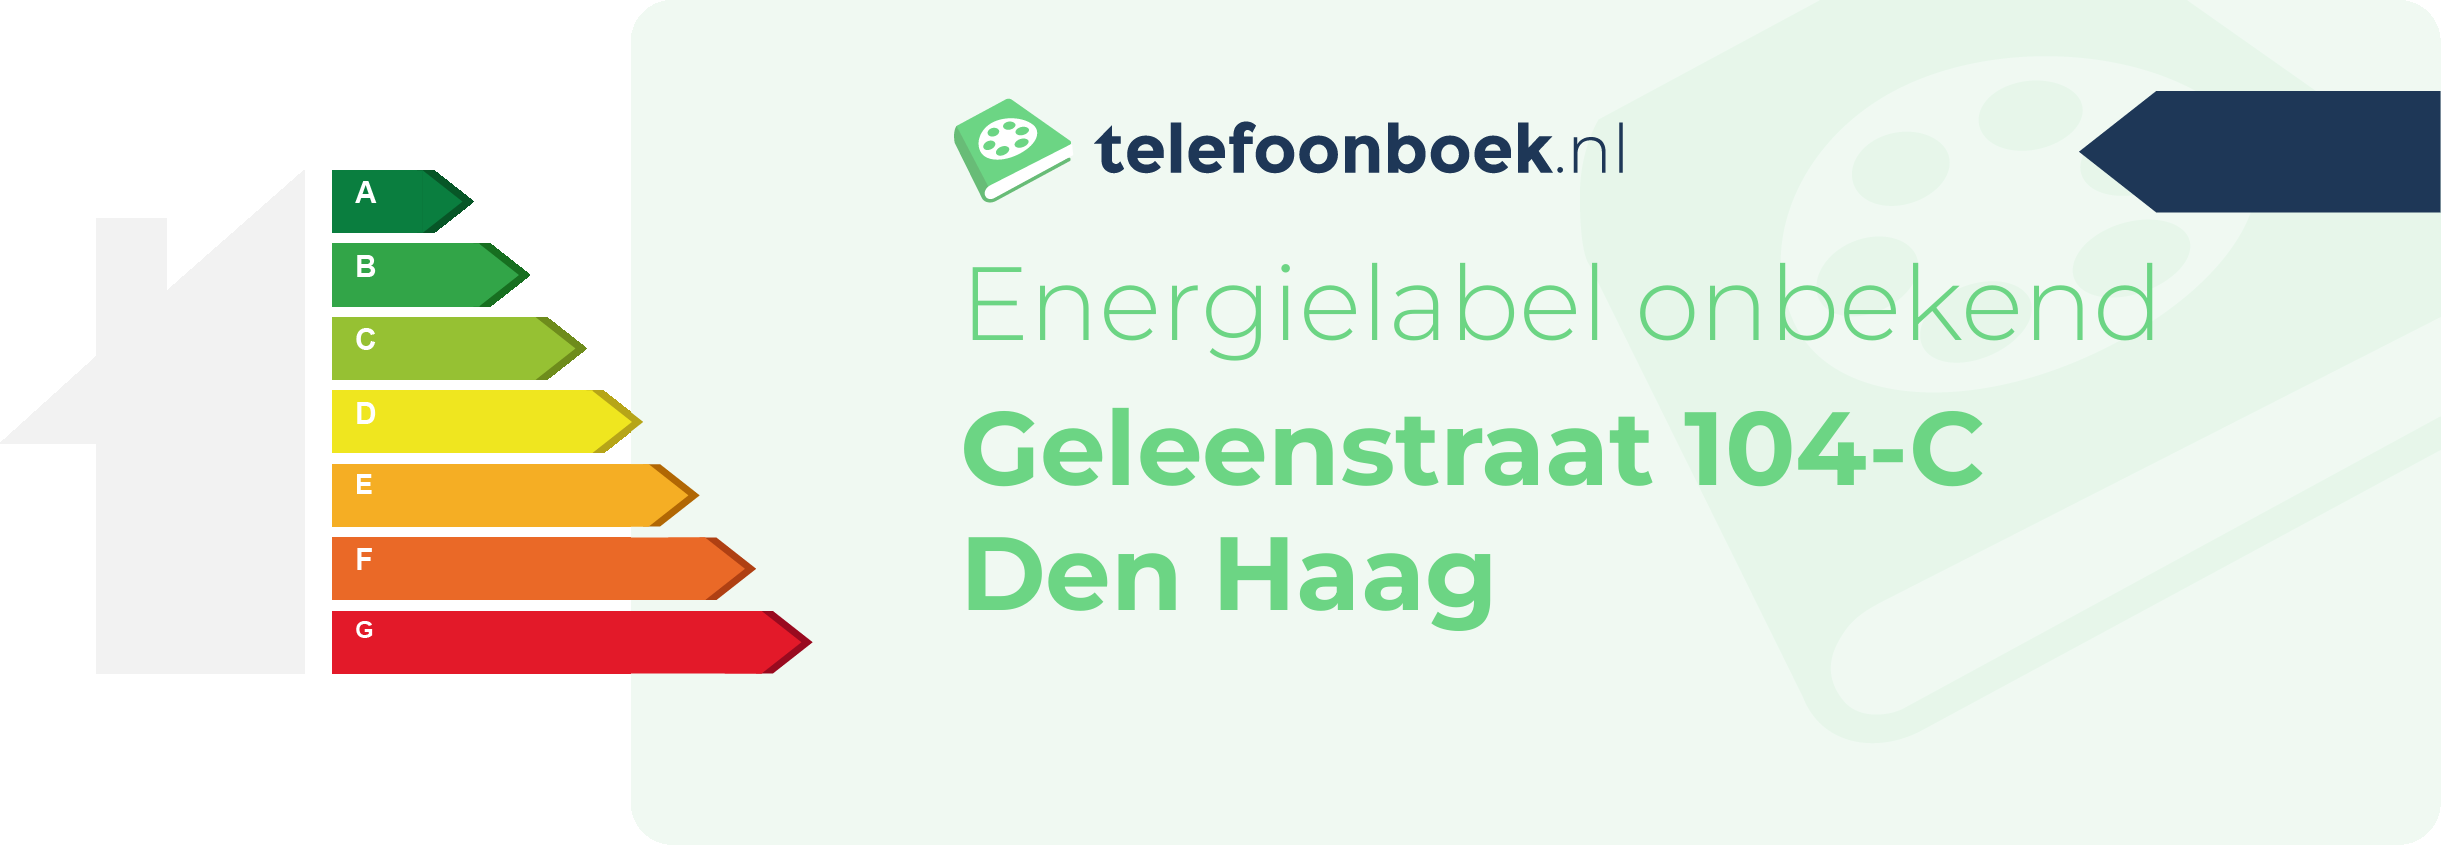 Energielabel Geleenstraat 104-C Den Haag